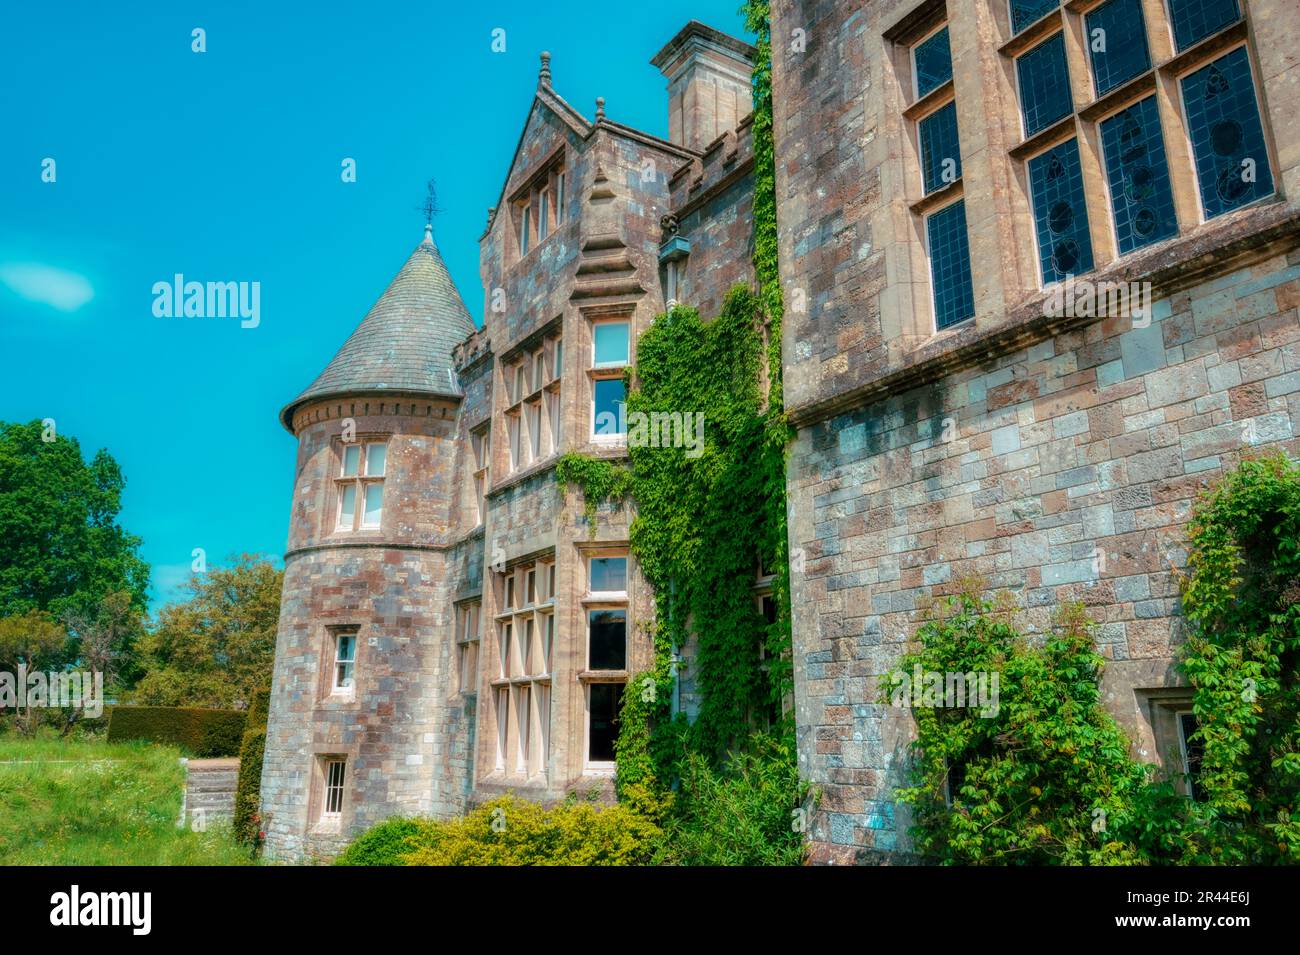 Palace House, Beaulieu, Hampshire, UK Stock Photo